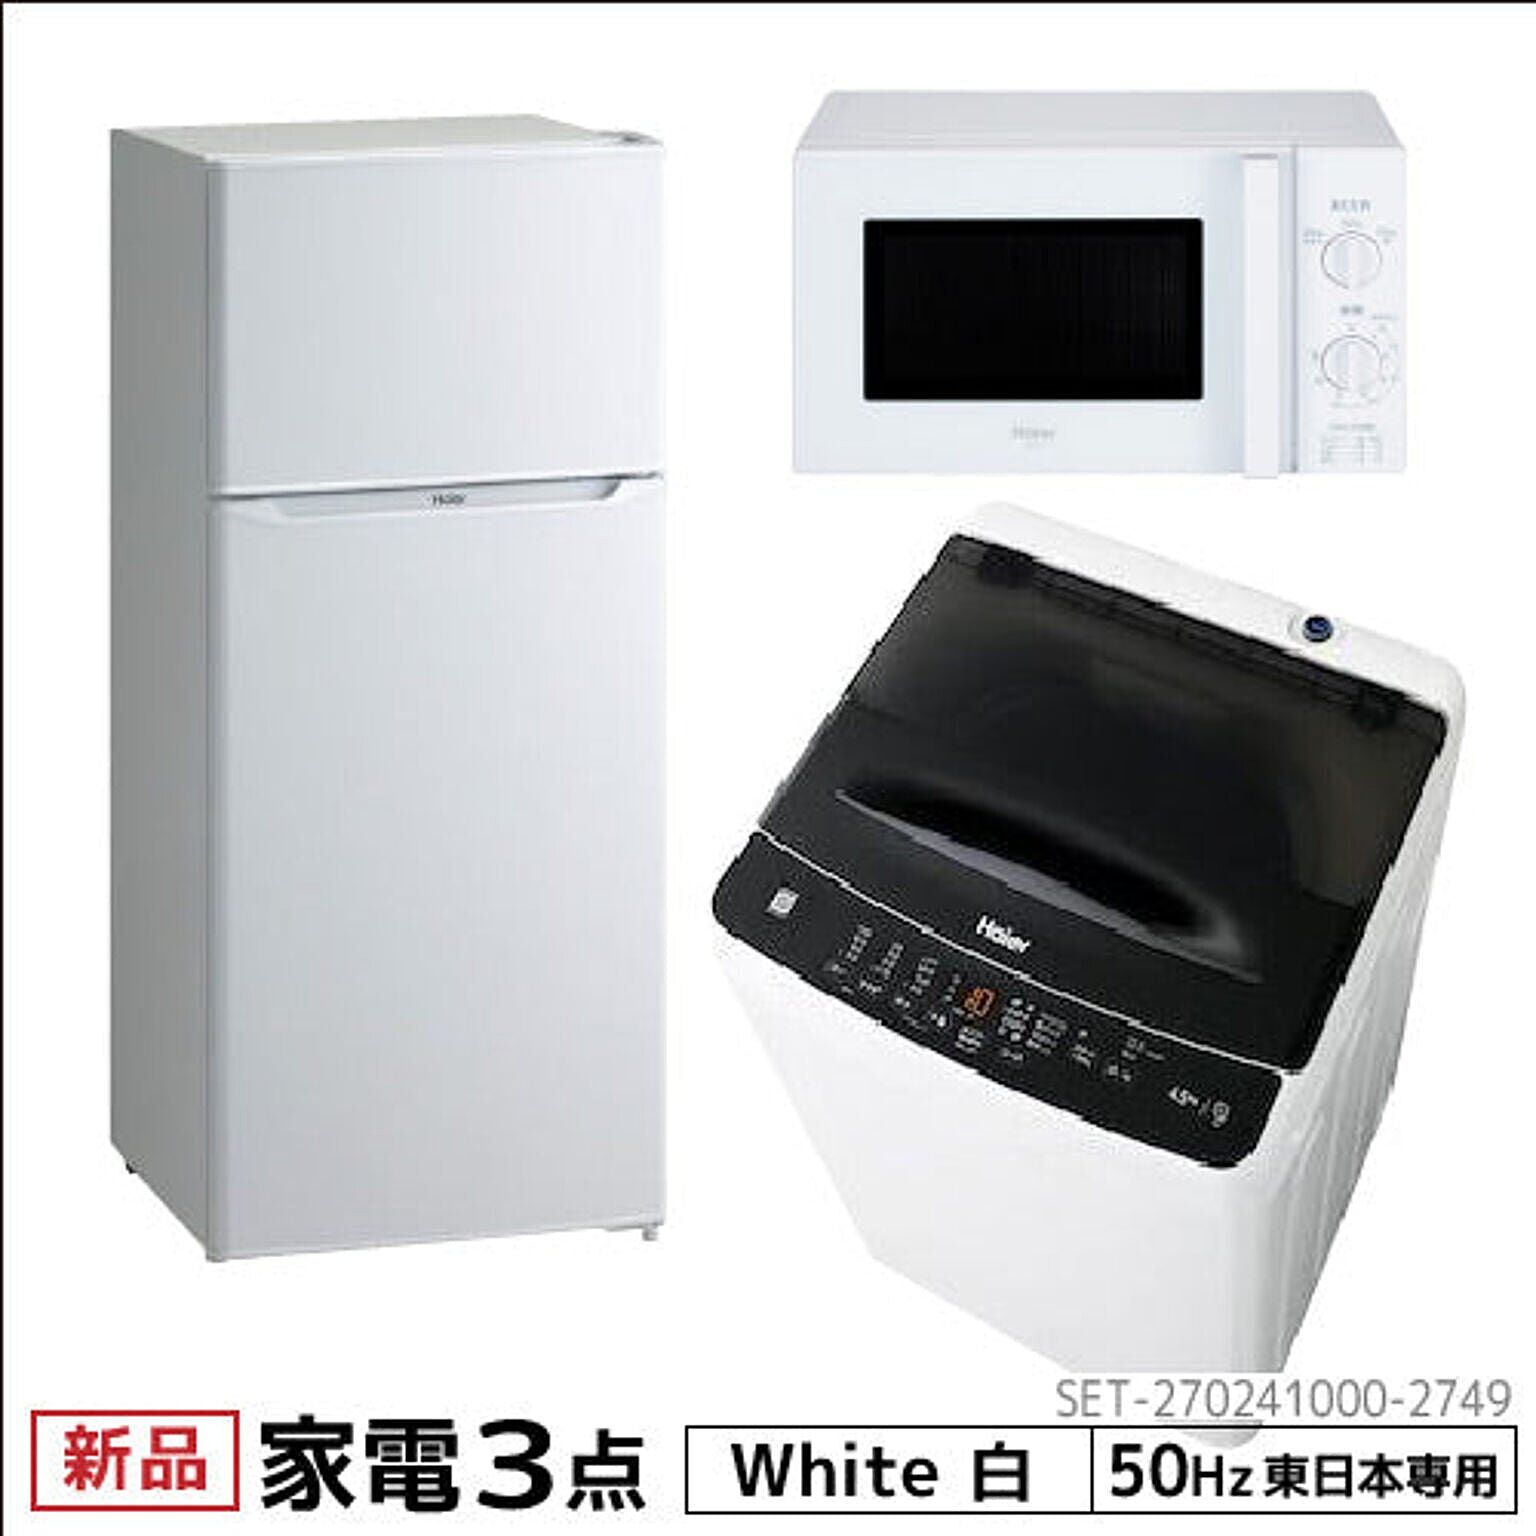 新生活 一人暮らし 家電セット 冷蔵庫 洗濯機 電子レンジ 3点セット 東日本地域専用 ハイアール 2ドア冷蔵庫 ホワイト色 130L 洗濯機 洗濯4.5kg 電子レンジ ホワイト 17L 50Hz